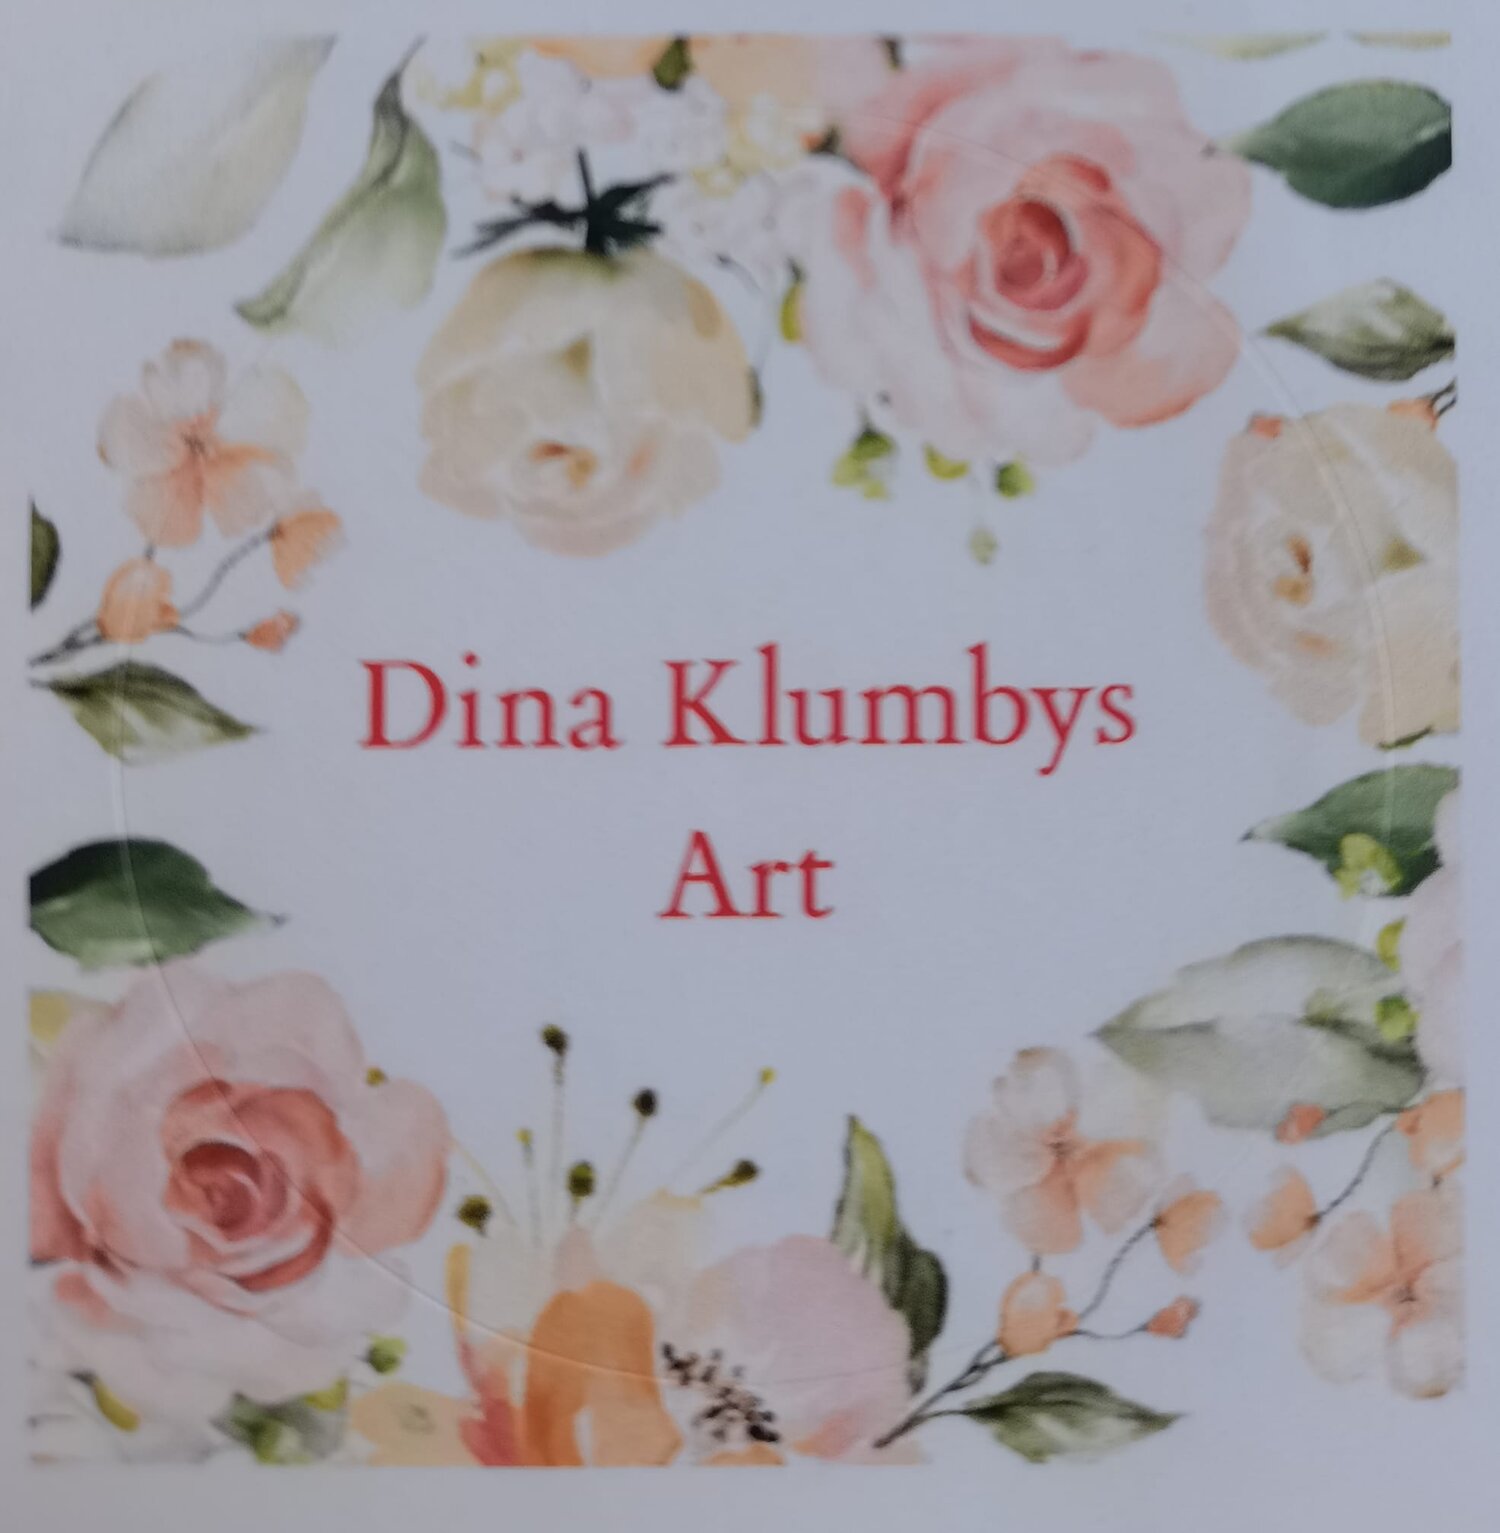 Dina Klumbys Art